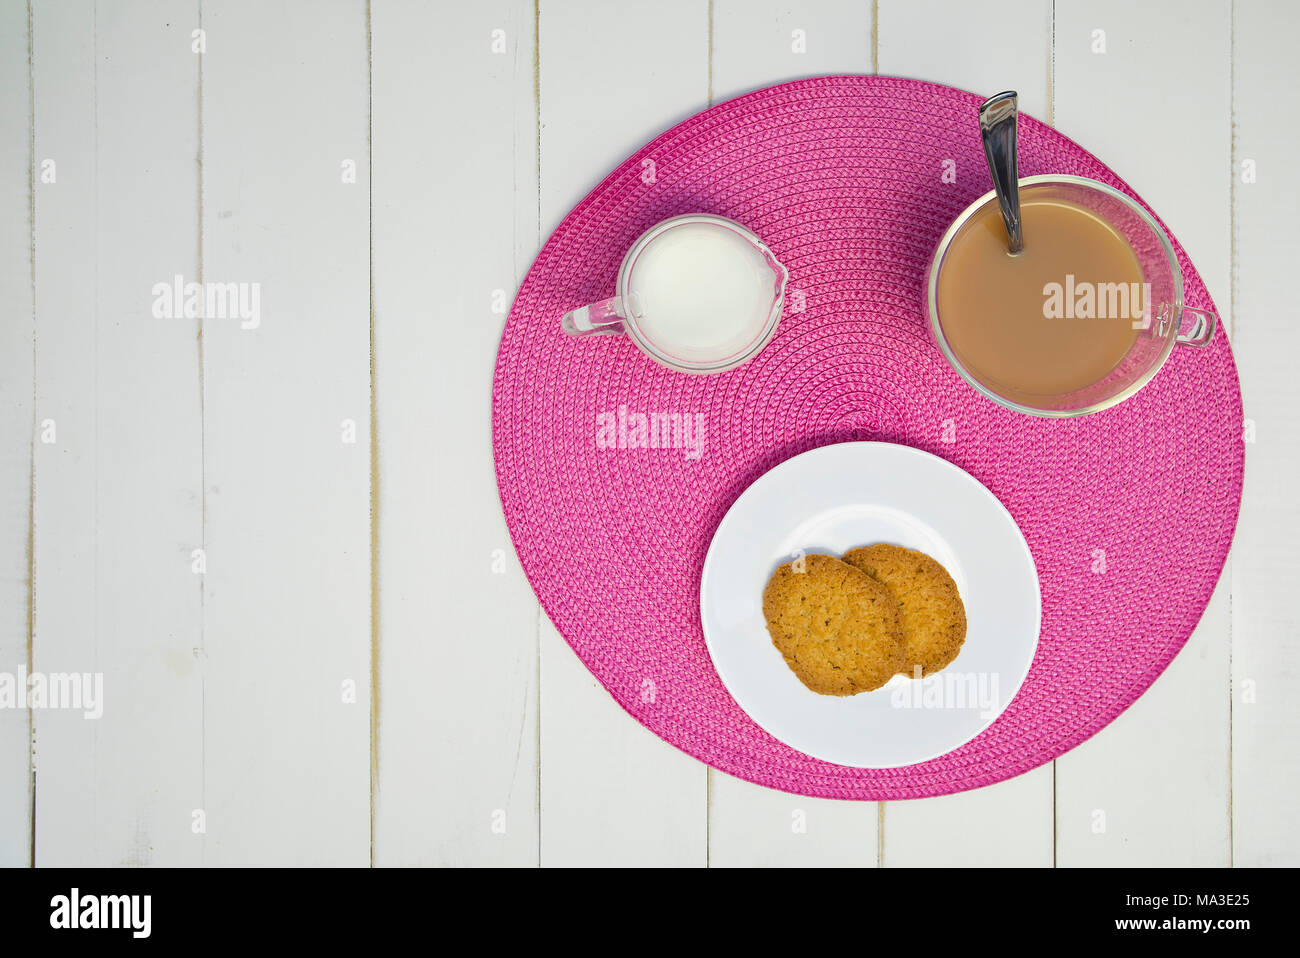 Heißen Tee, Kekse und Milch sind auf einem rosa Tischset auf eine weiße Tafel Tabelle angeordnet. Der Tee hat Milch in it. Die Anordnung ist außermittig und Schuß von Stockfoto